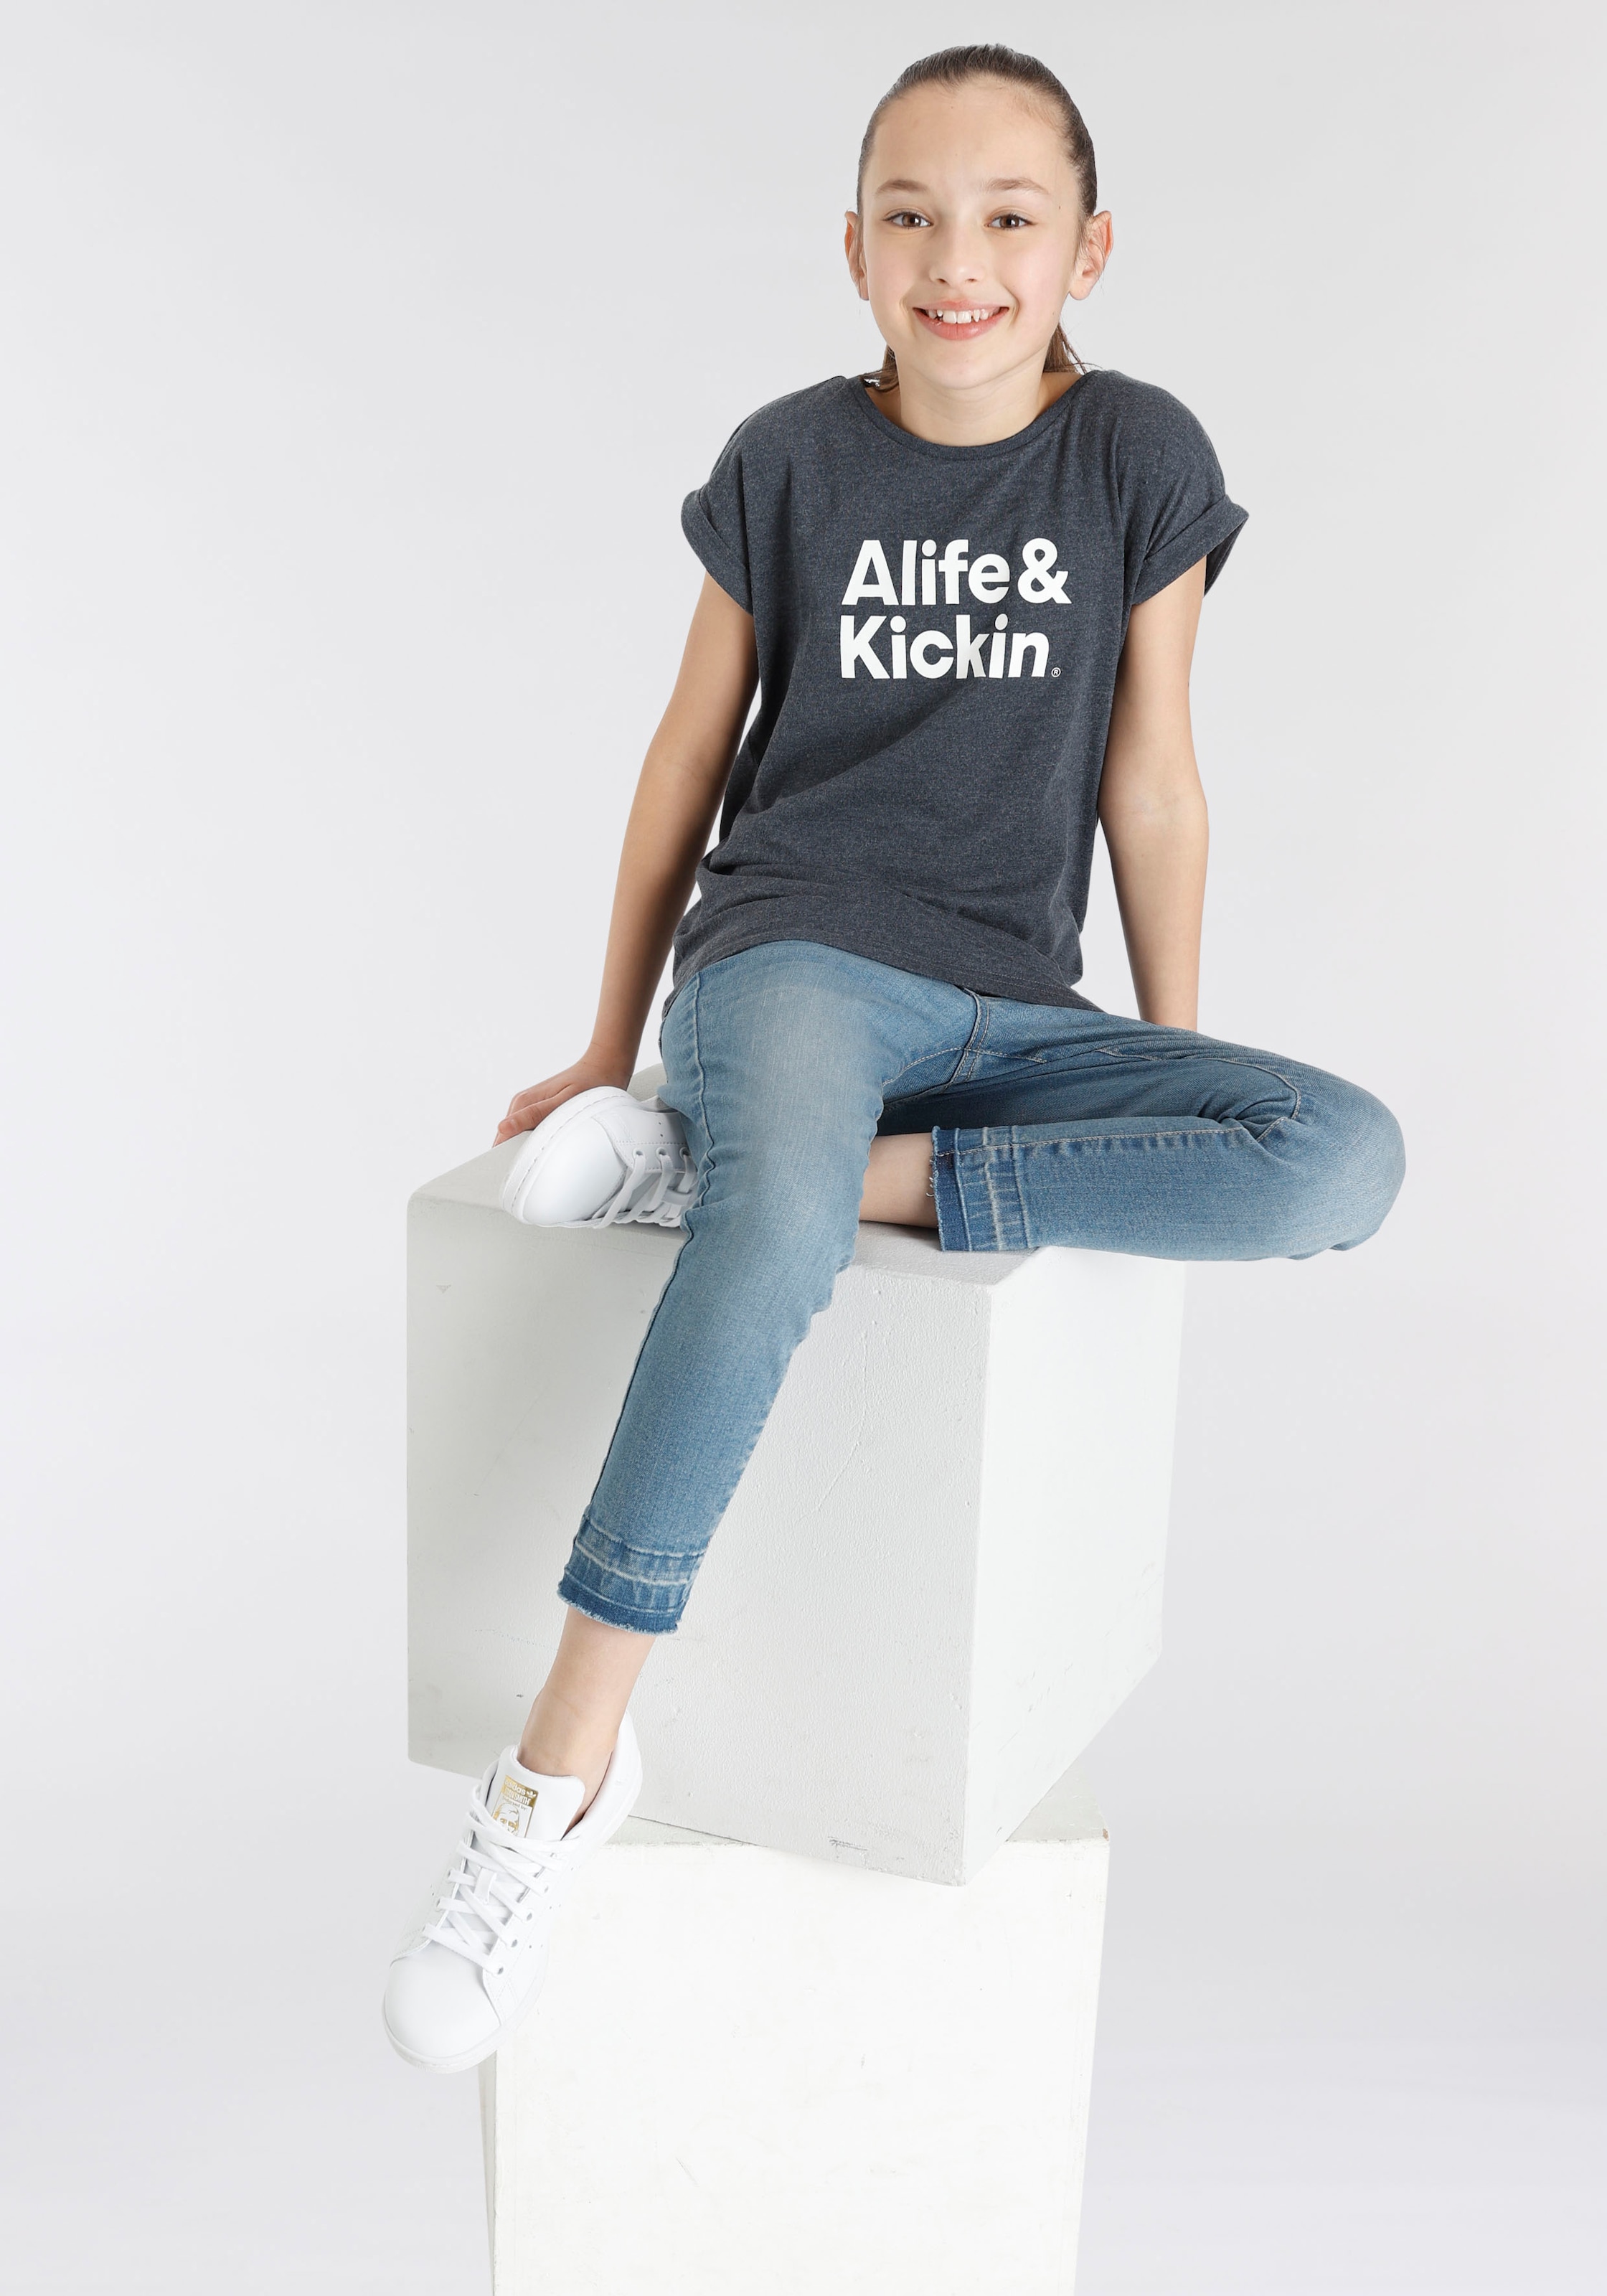 T-Shirt Druck«, MARKE! Kickin Kickin Alife »mit Alife OTTO & für Kids. & bei NEUE Logo